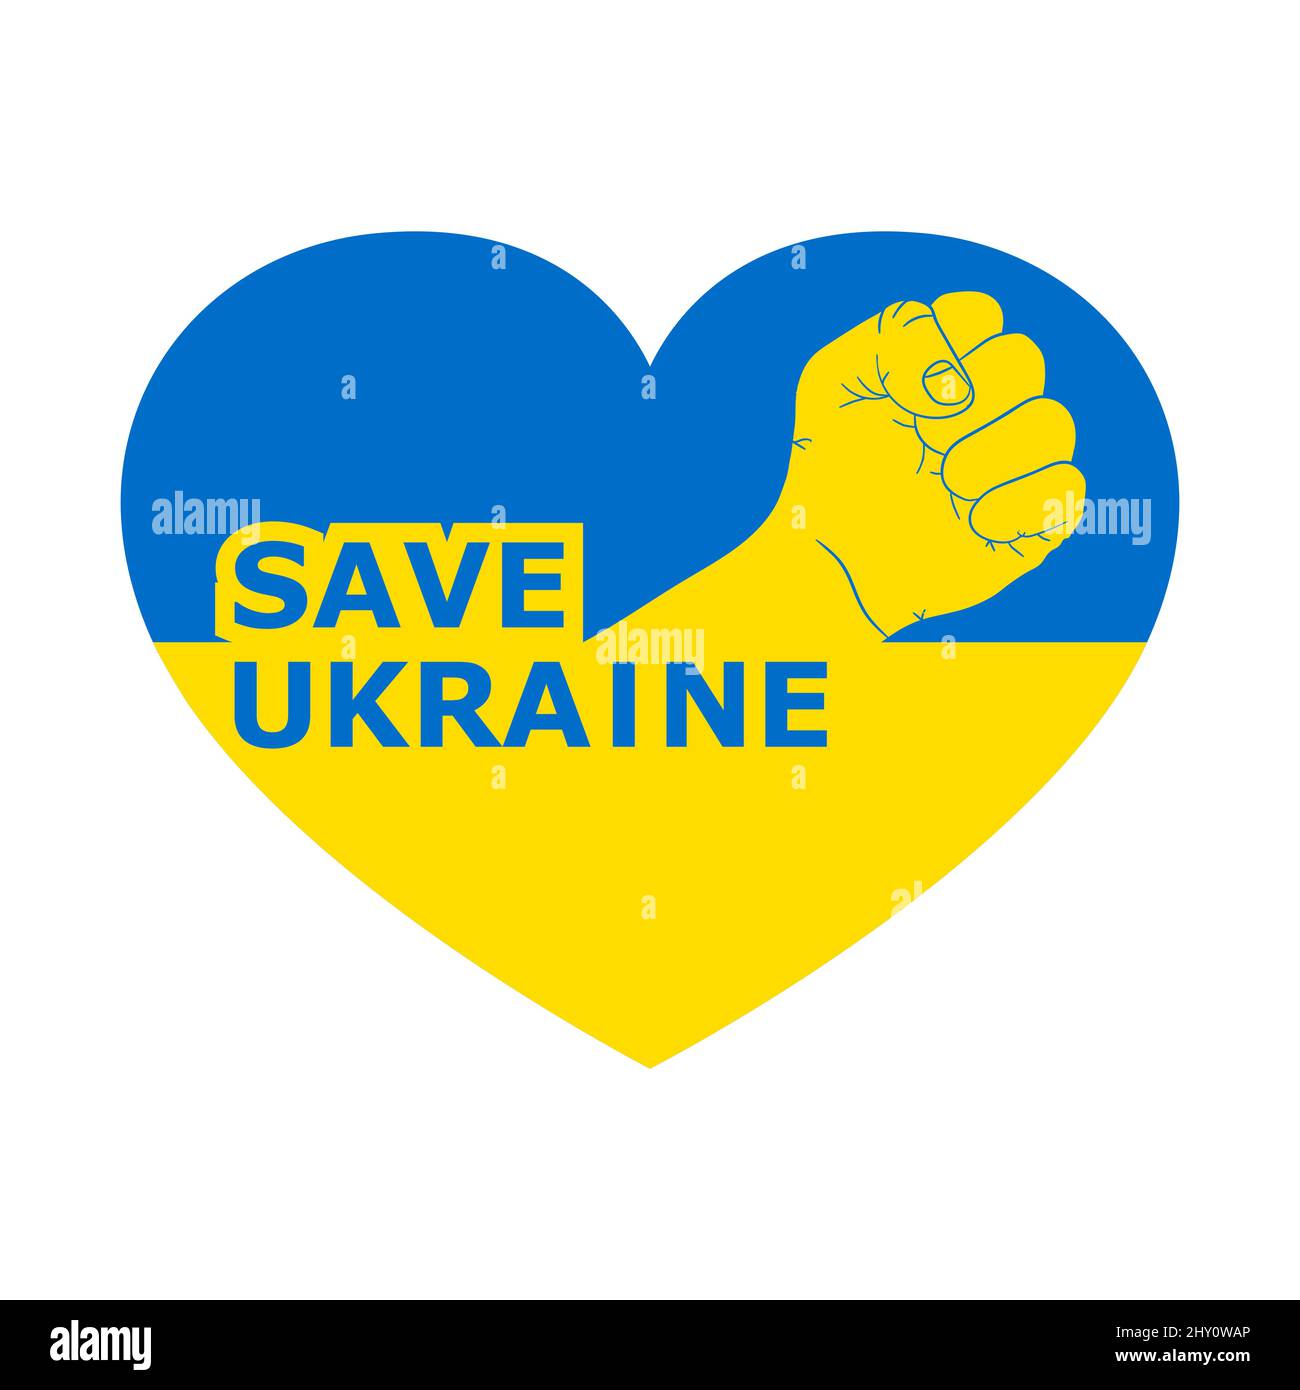 Appel pour sauver l'Ukraine. Concept de conflit. Illustration vectorielle. Lever la main d'un homme en forme de cœur Illustration de Vecteur